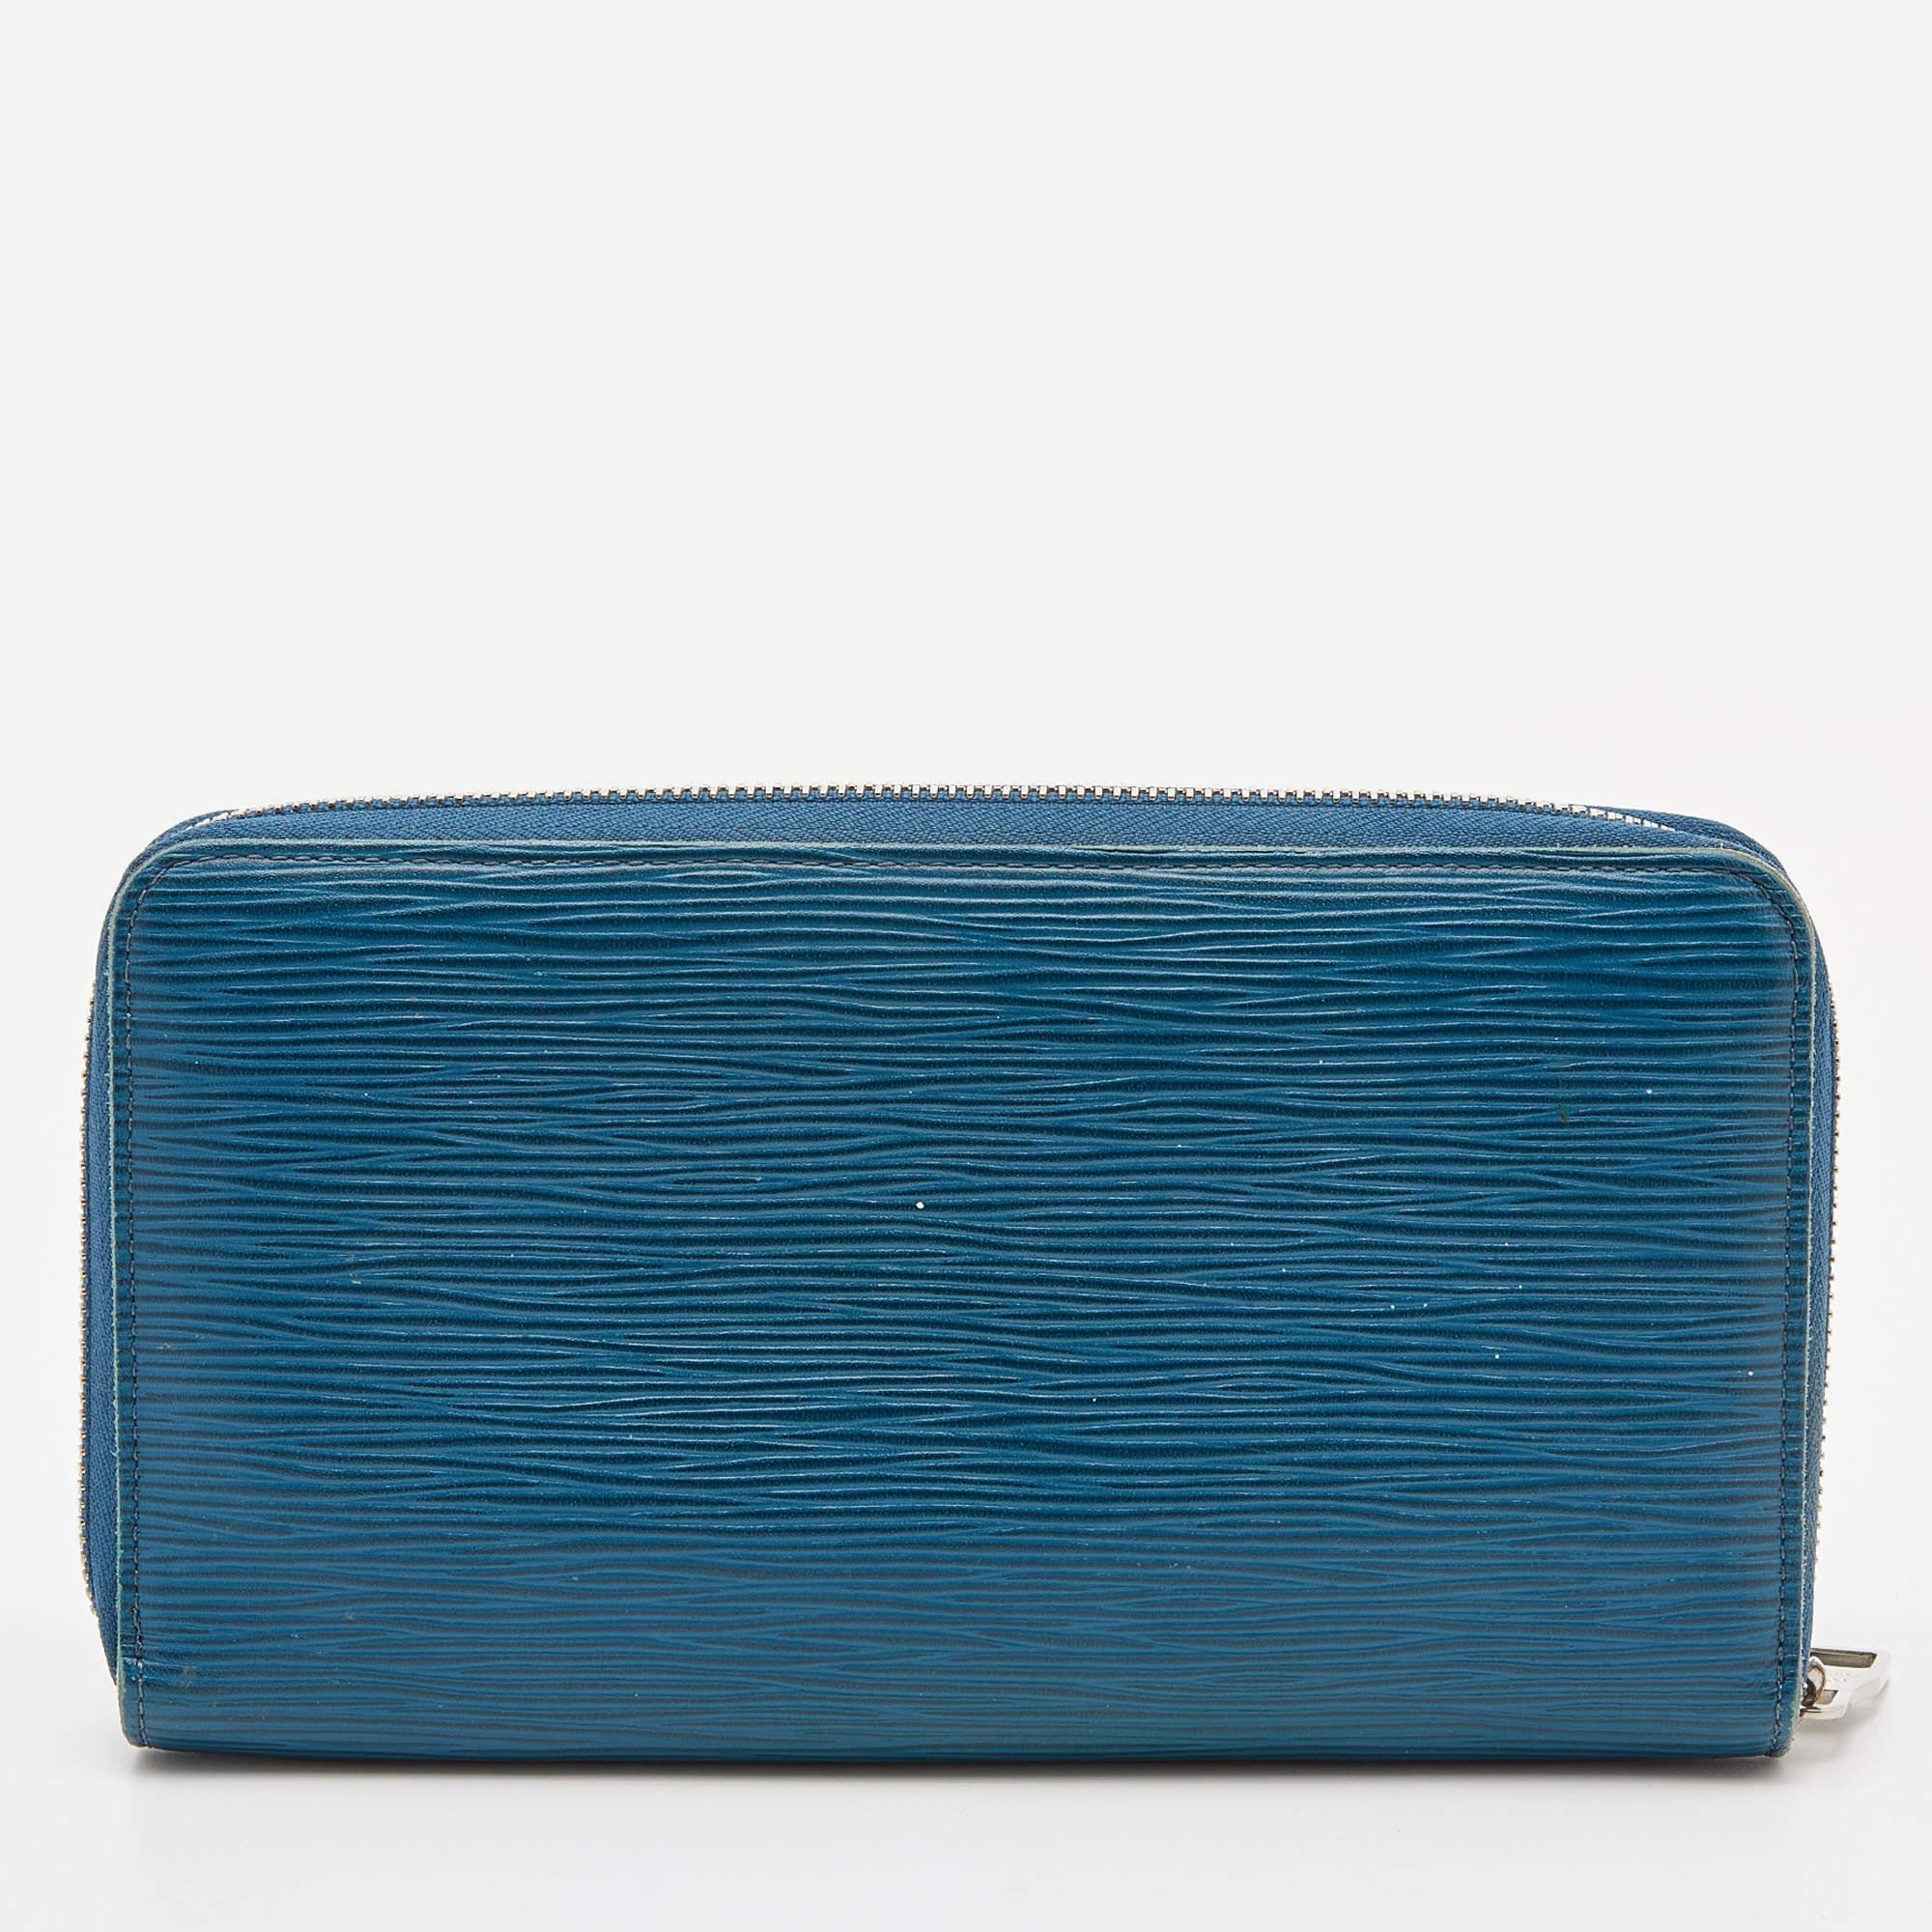 Ce portefeuille Louis Vuitton Zippy est conçu de manière pratique pour une utilisation quotidienne. Confectionné en cuir Cyan Epi, il est doté d'une fermeture zippée et d'accessoires argentés. L'intérieur compartimenté du portefeuille permet de